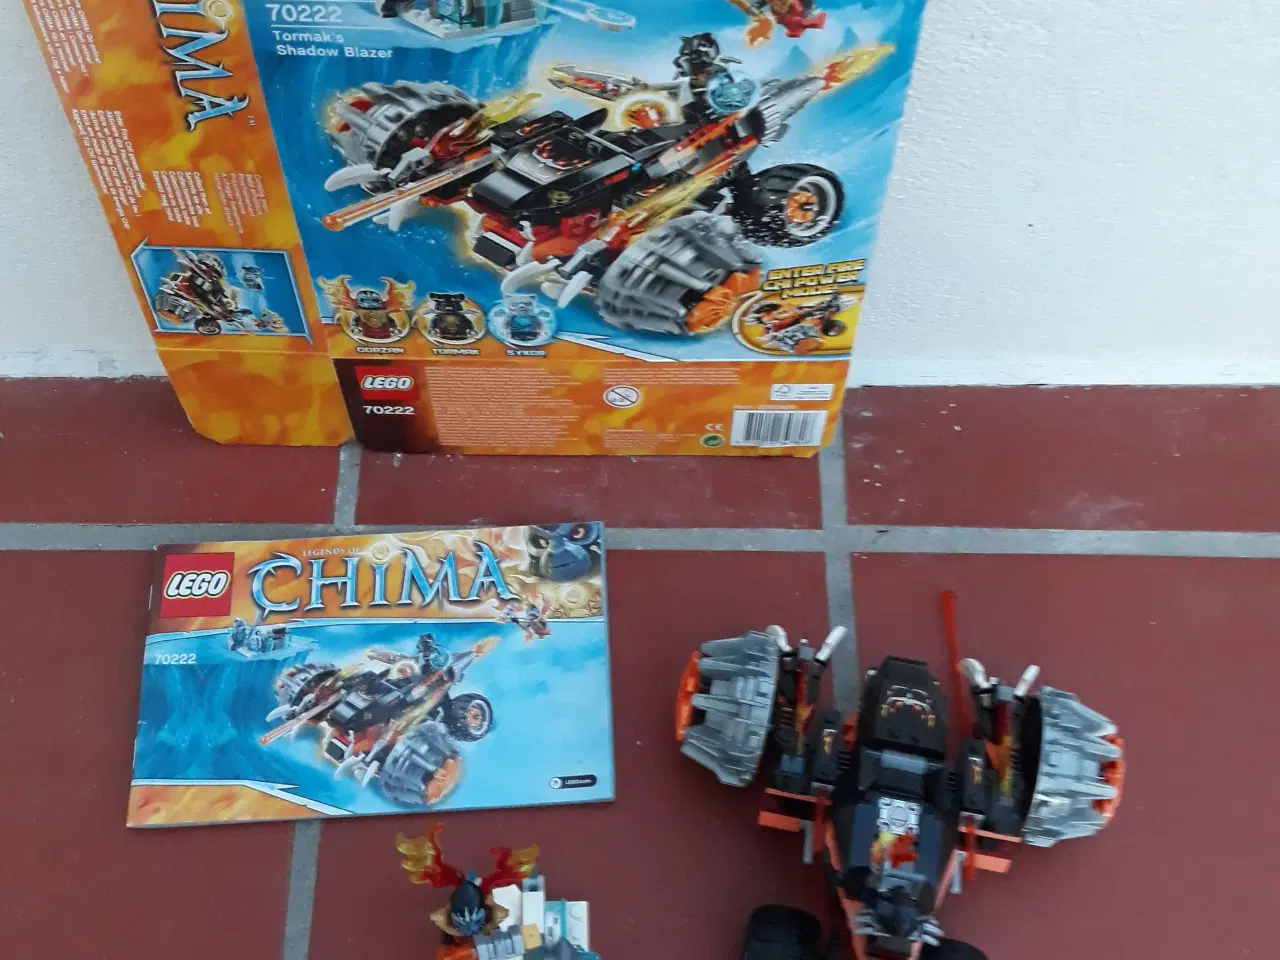 Billede 1 - Lego Chima, 70222